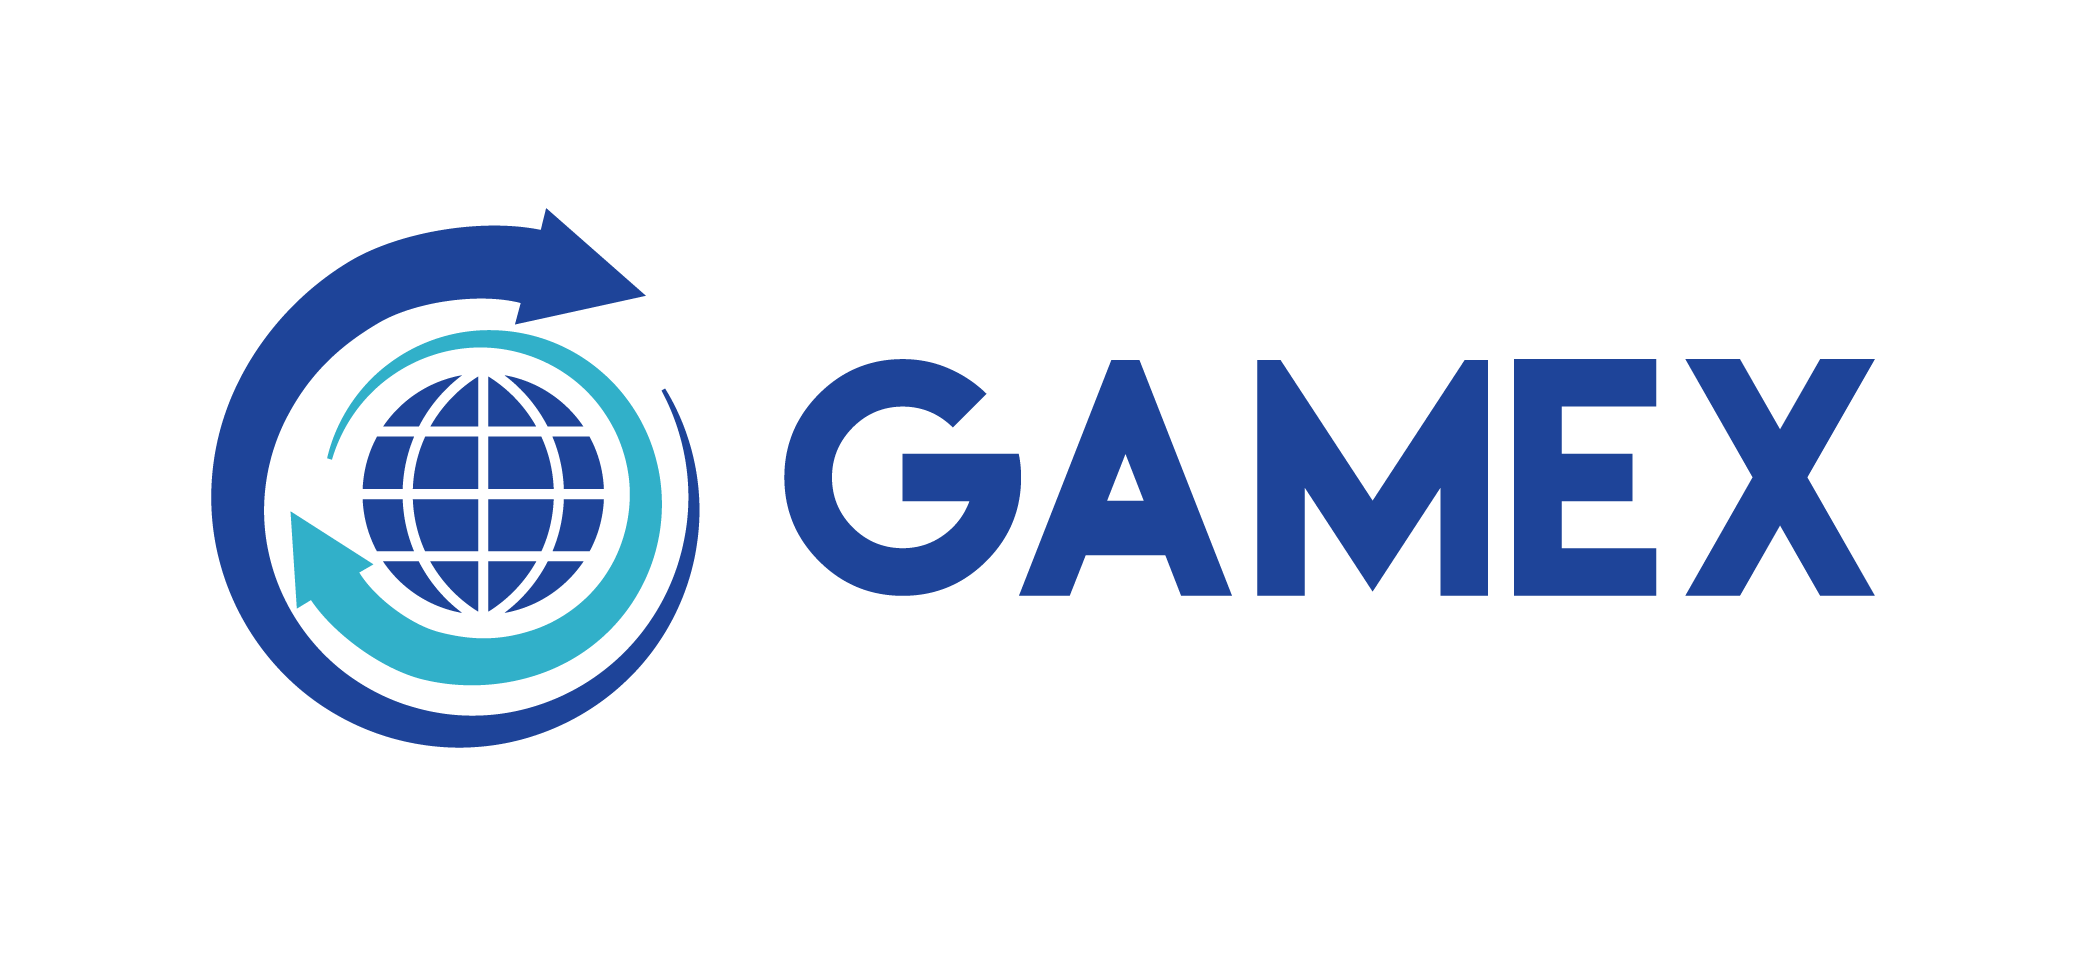 Gamex Logo - Gamex logo 1 logodesignfx